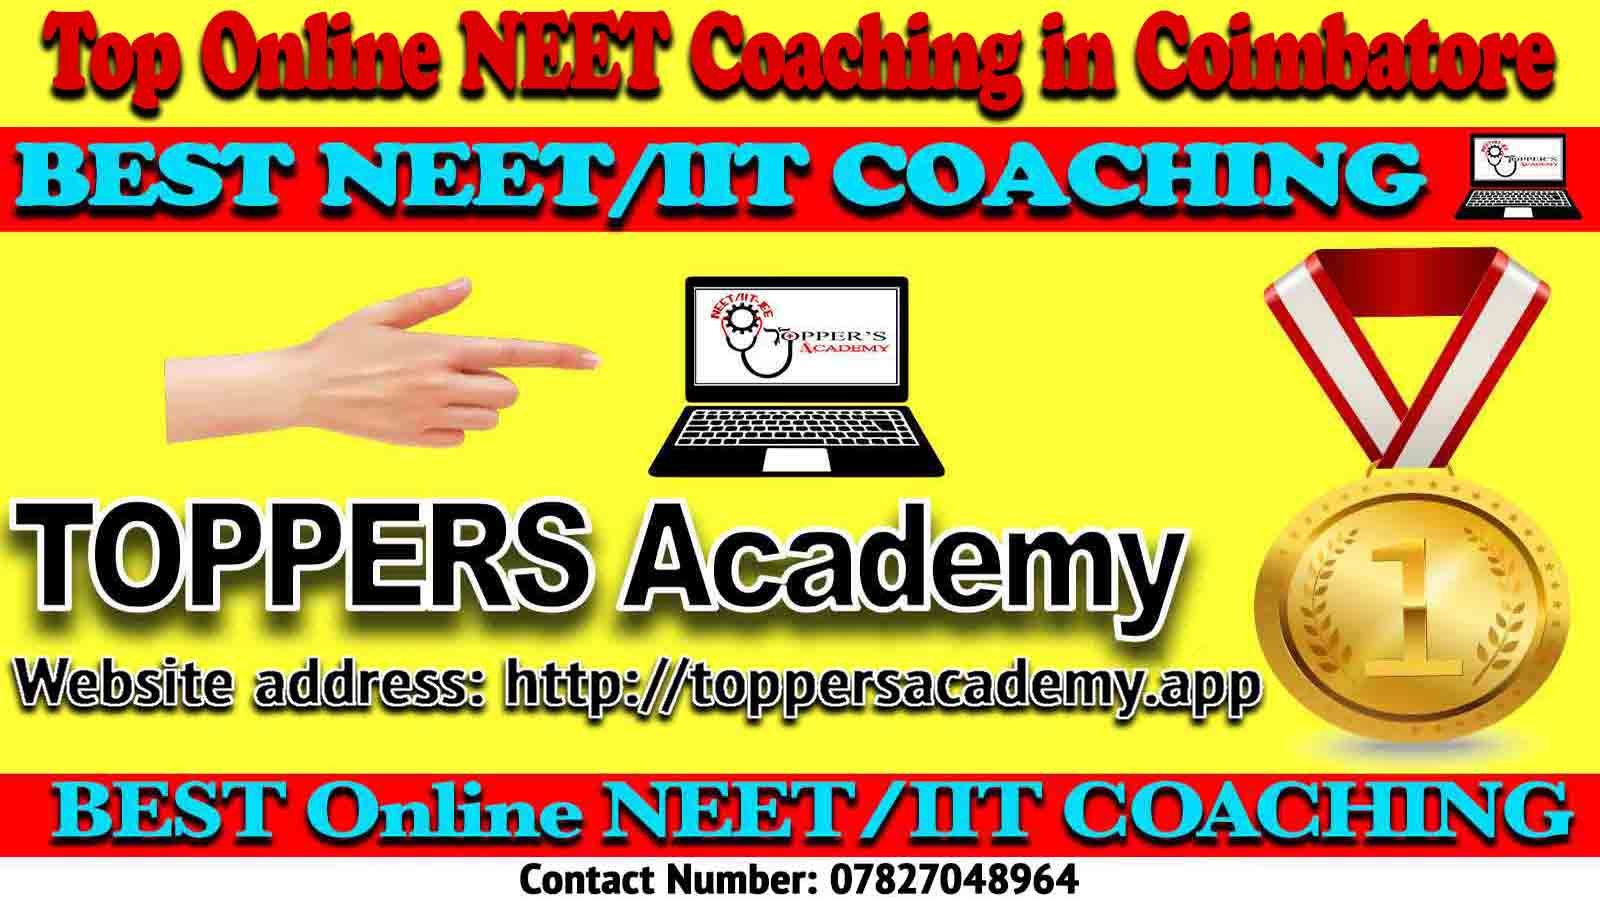 Best Online NEET Coaching in Coimbatore